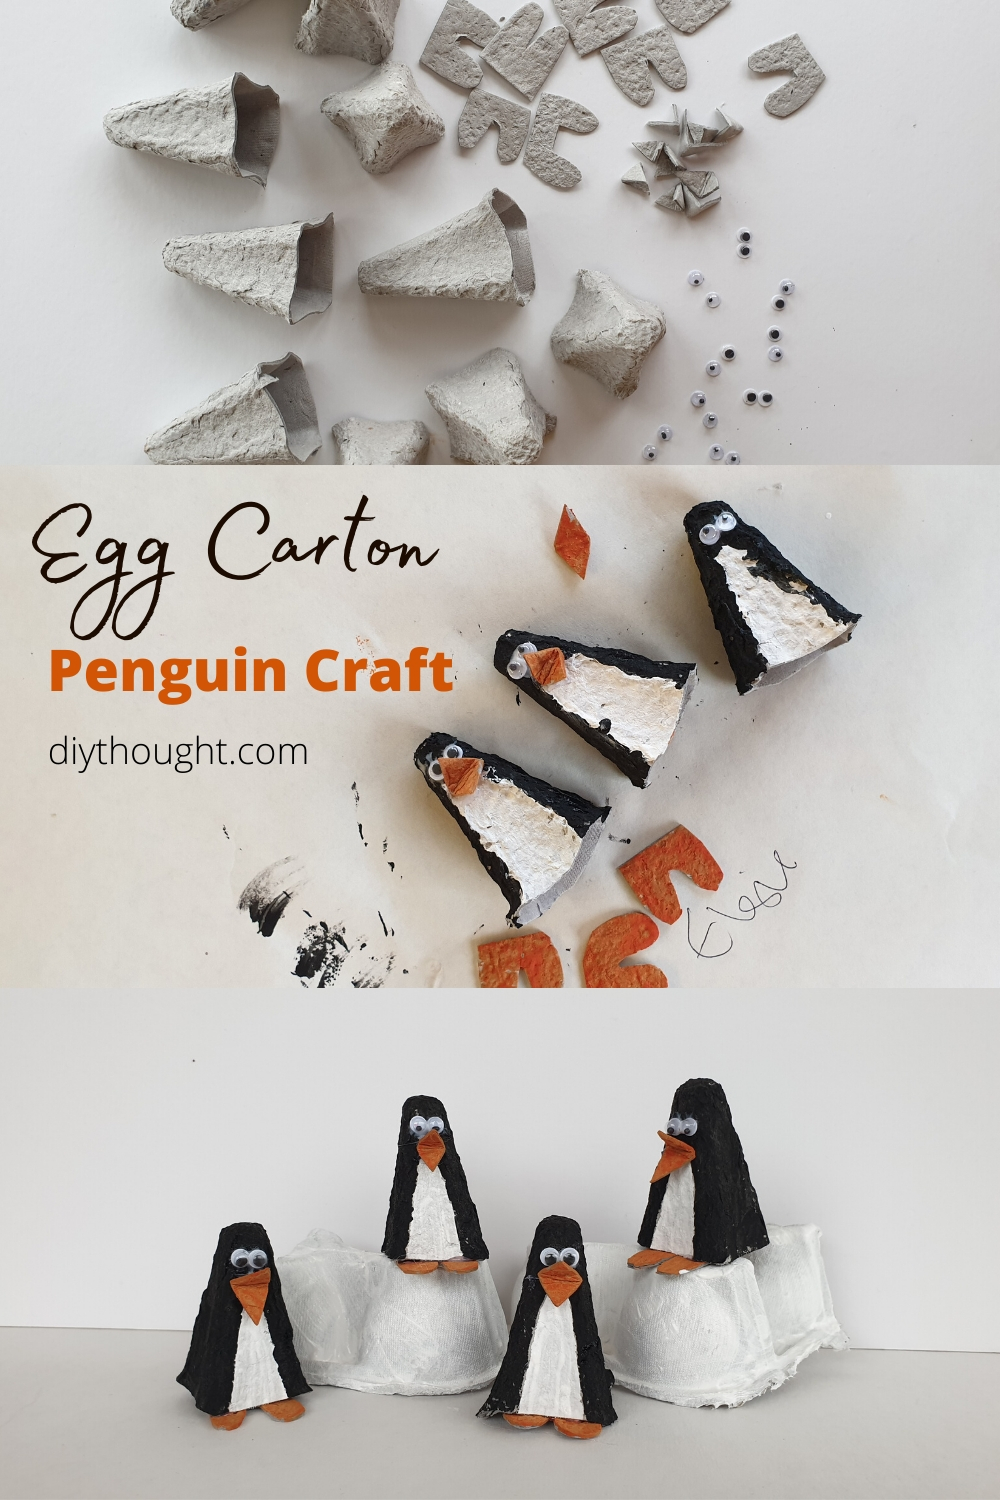 DIY egg carton penguin